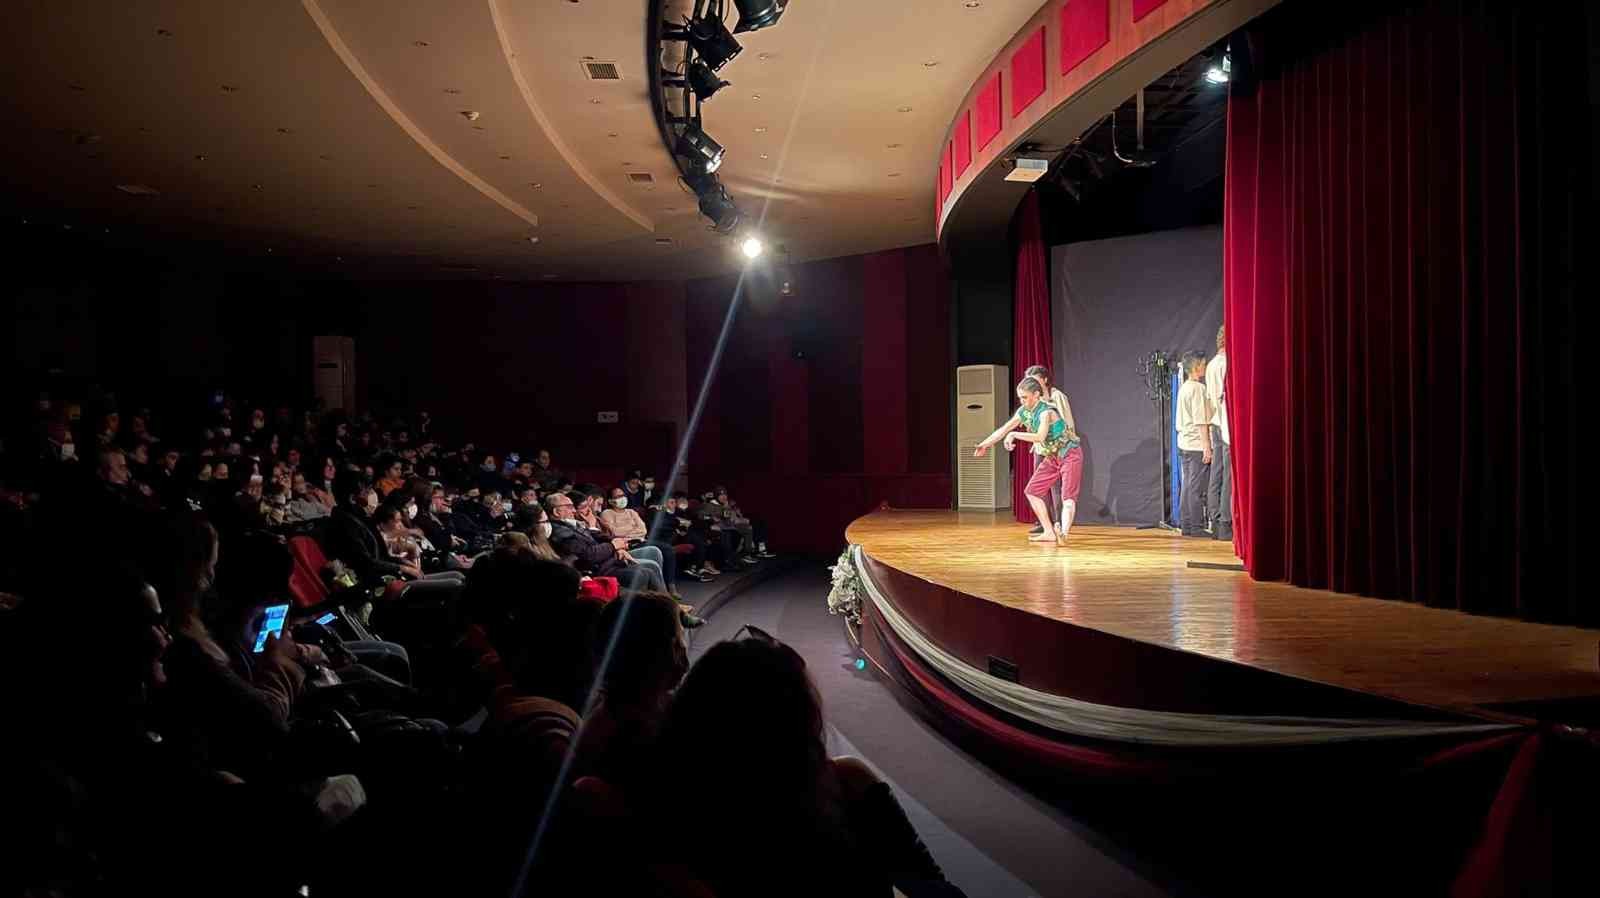 Nazilli’de 500 öğrenci ilk kez tiyatro izledi #aydin